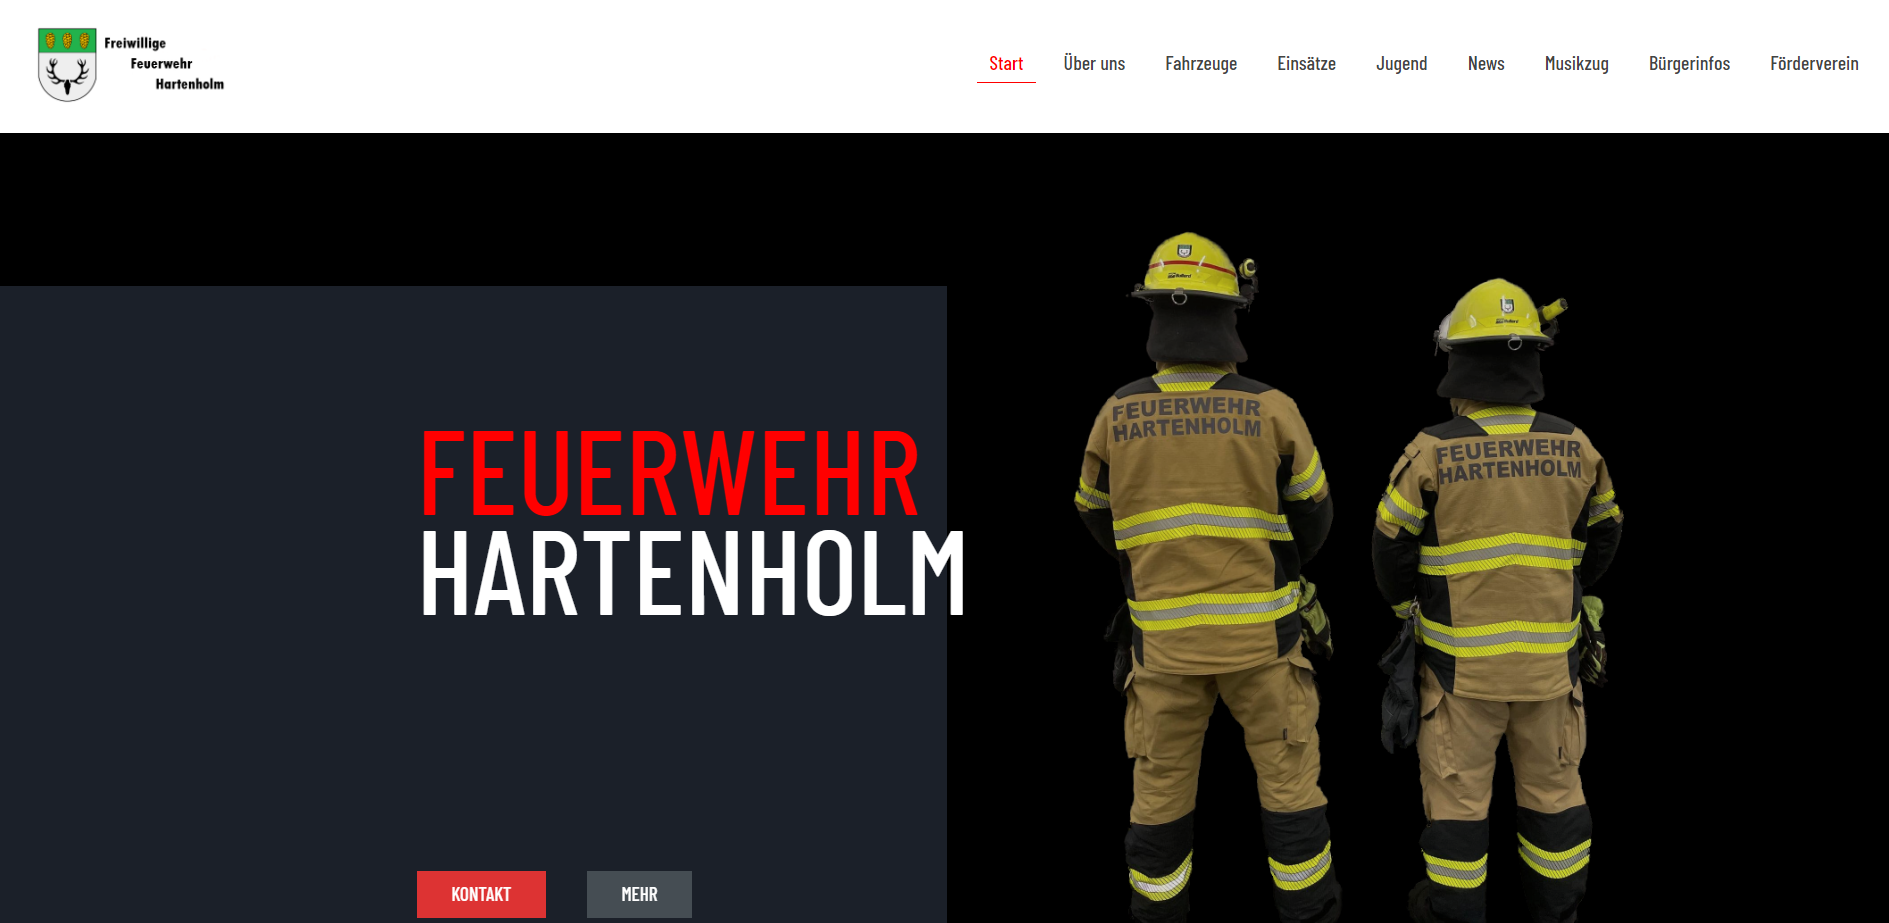 Freiwillige Feuerwehr Hartenholm